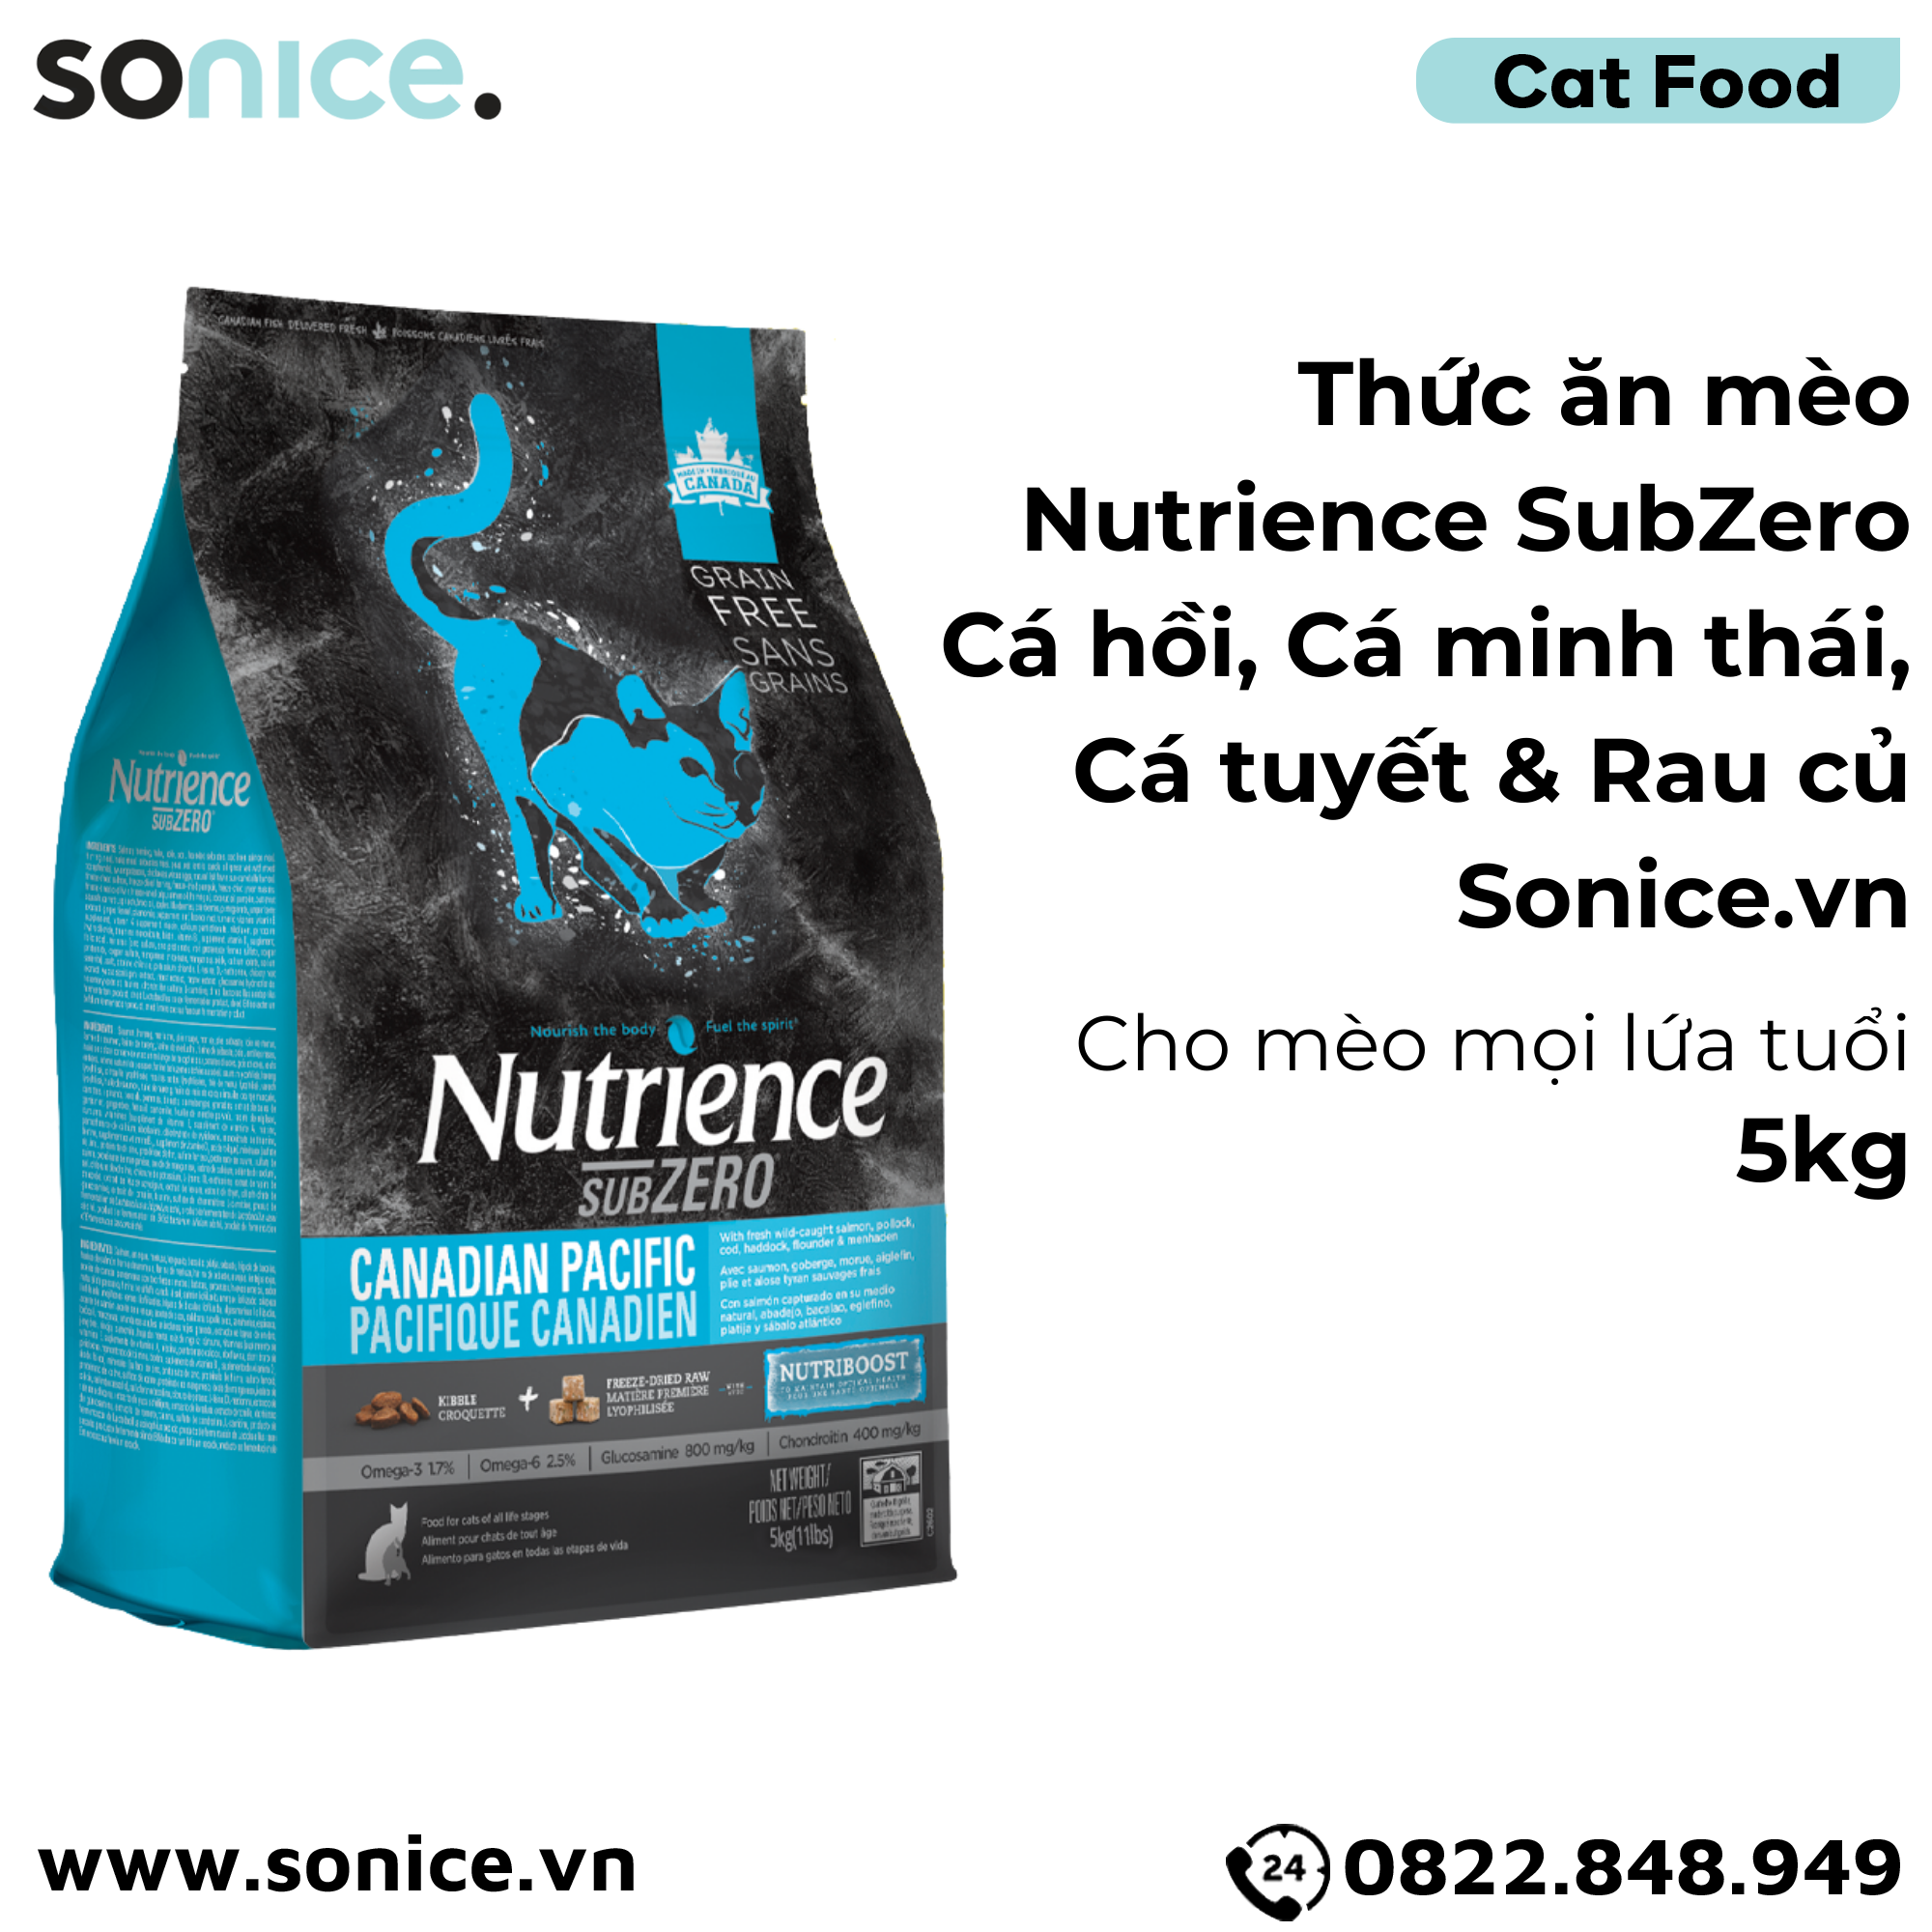  Thức ăn mèo Nutrience SubZero Cá hồi, Cá minh thái, Cá tuyết & Rau củ 5kg - Cho mèo mọi lứa tuổi SONICE. 